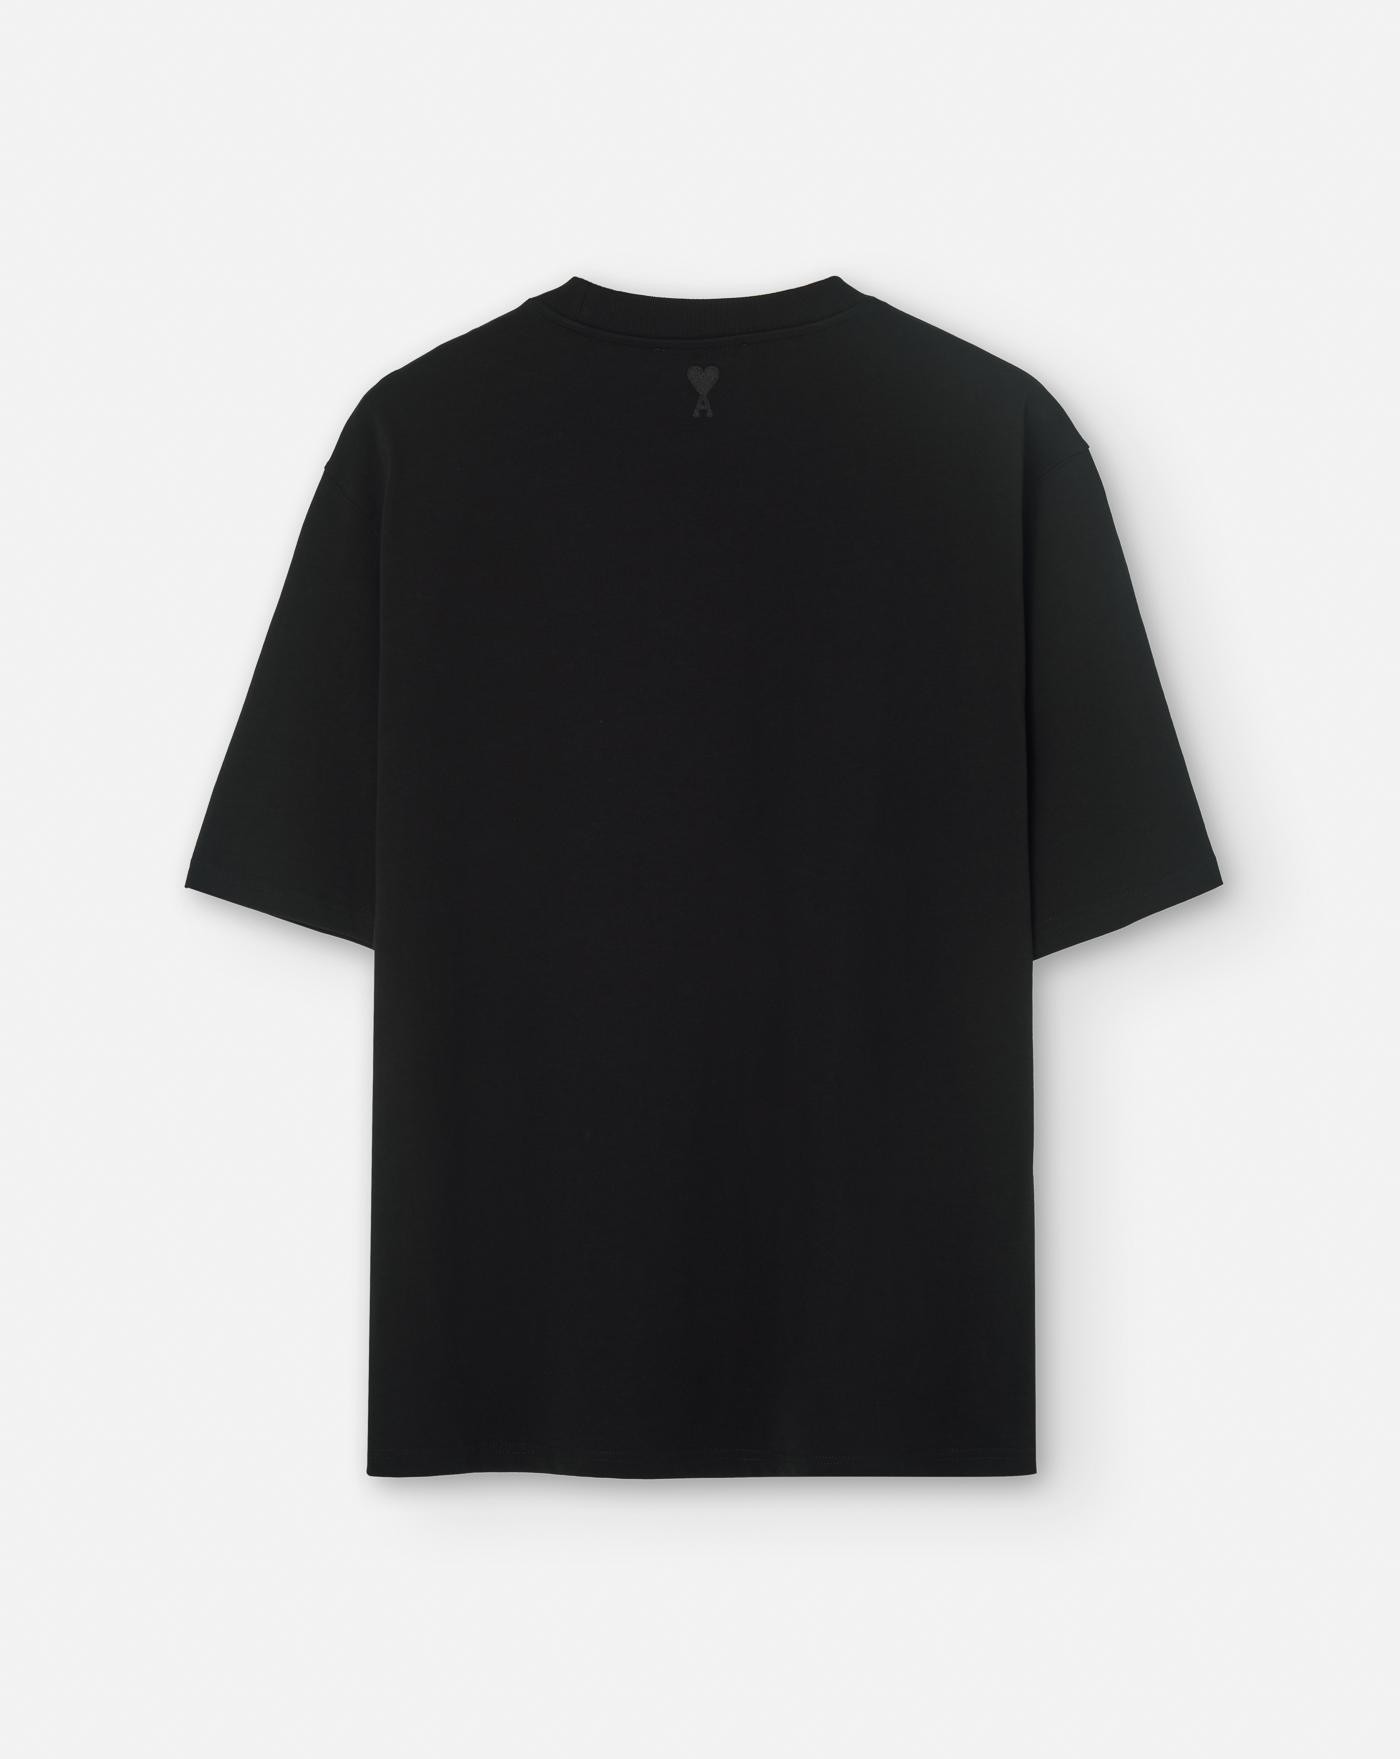 ami-paris-camiseta-alexandre-mattiussi-t-shirt-black-negra-2